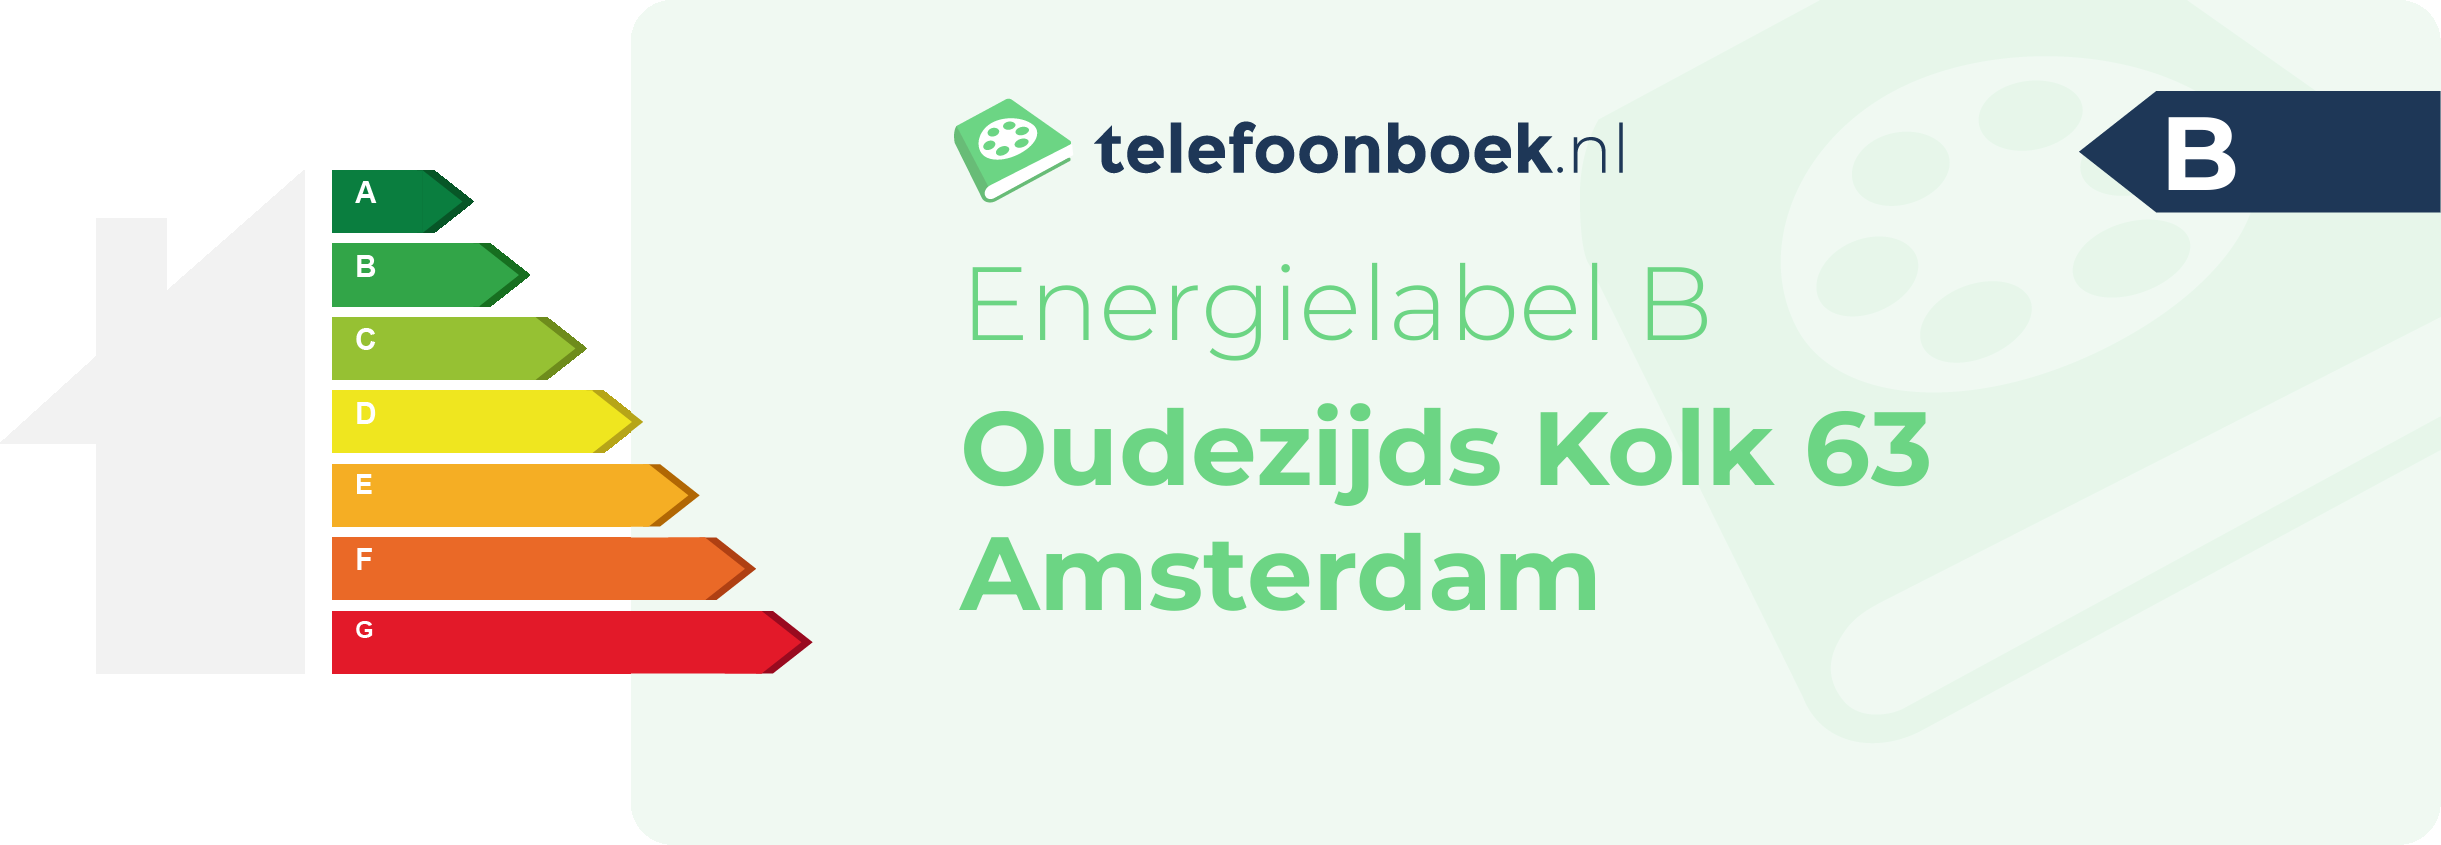 Energielabel Oudezijds Kolk 63 Amsterdam